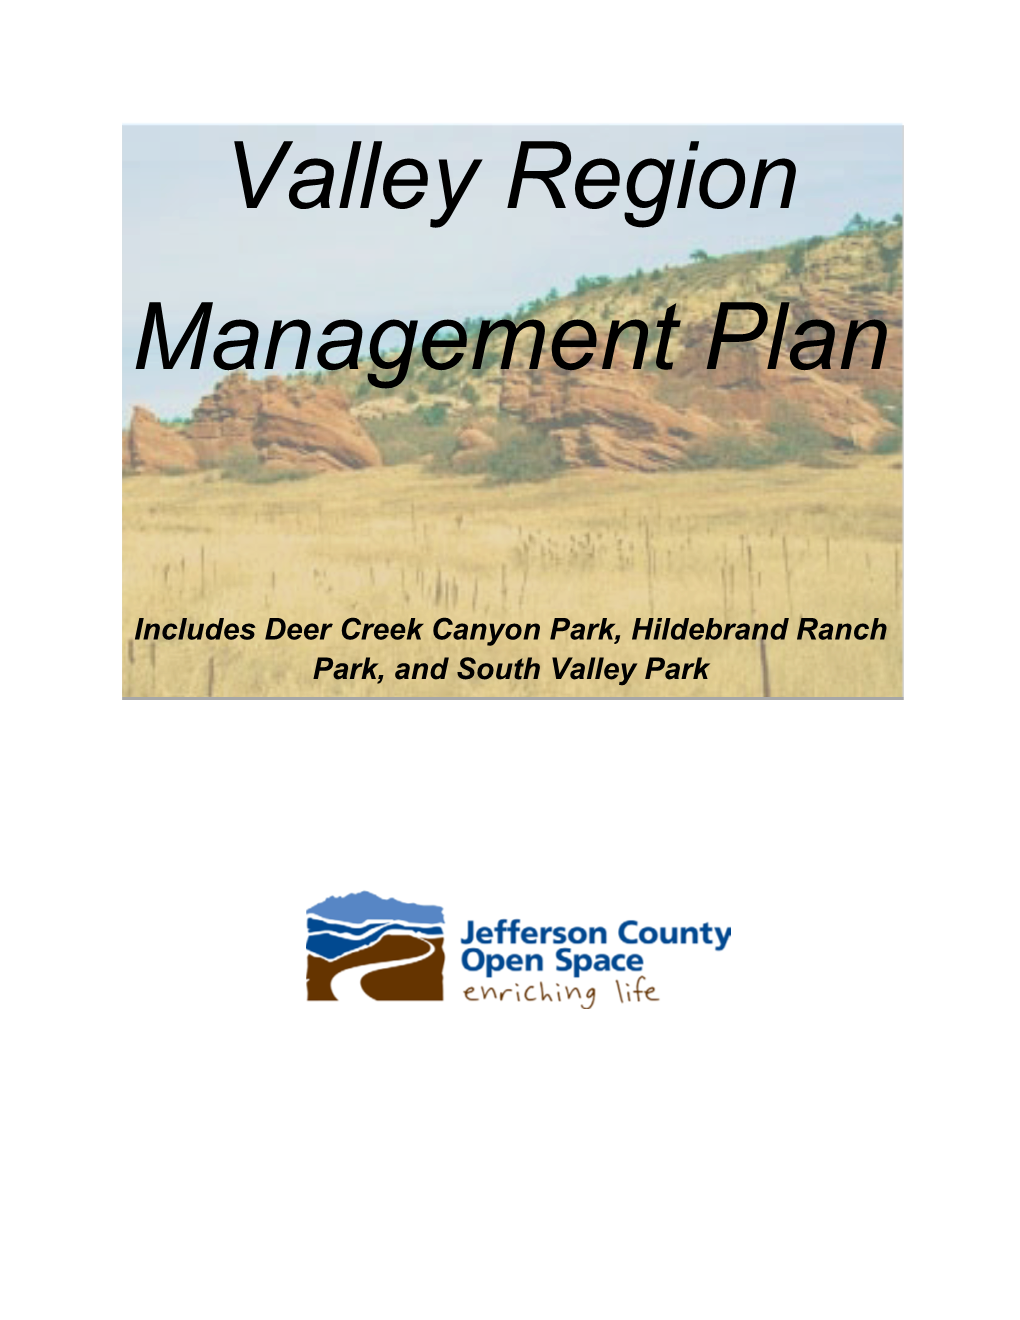 Valley Region Management Plan